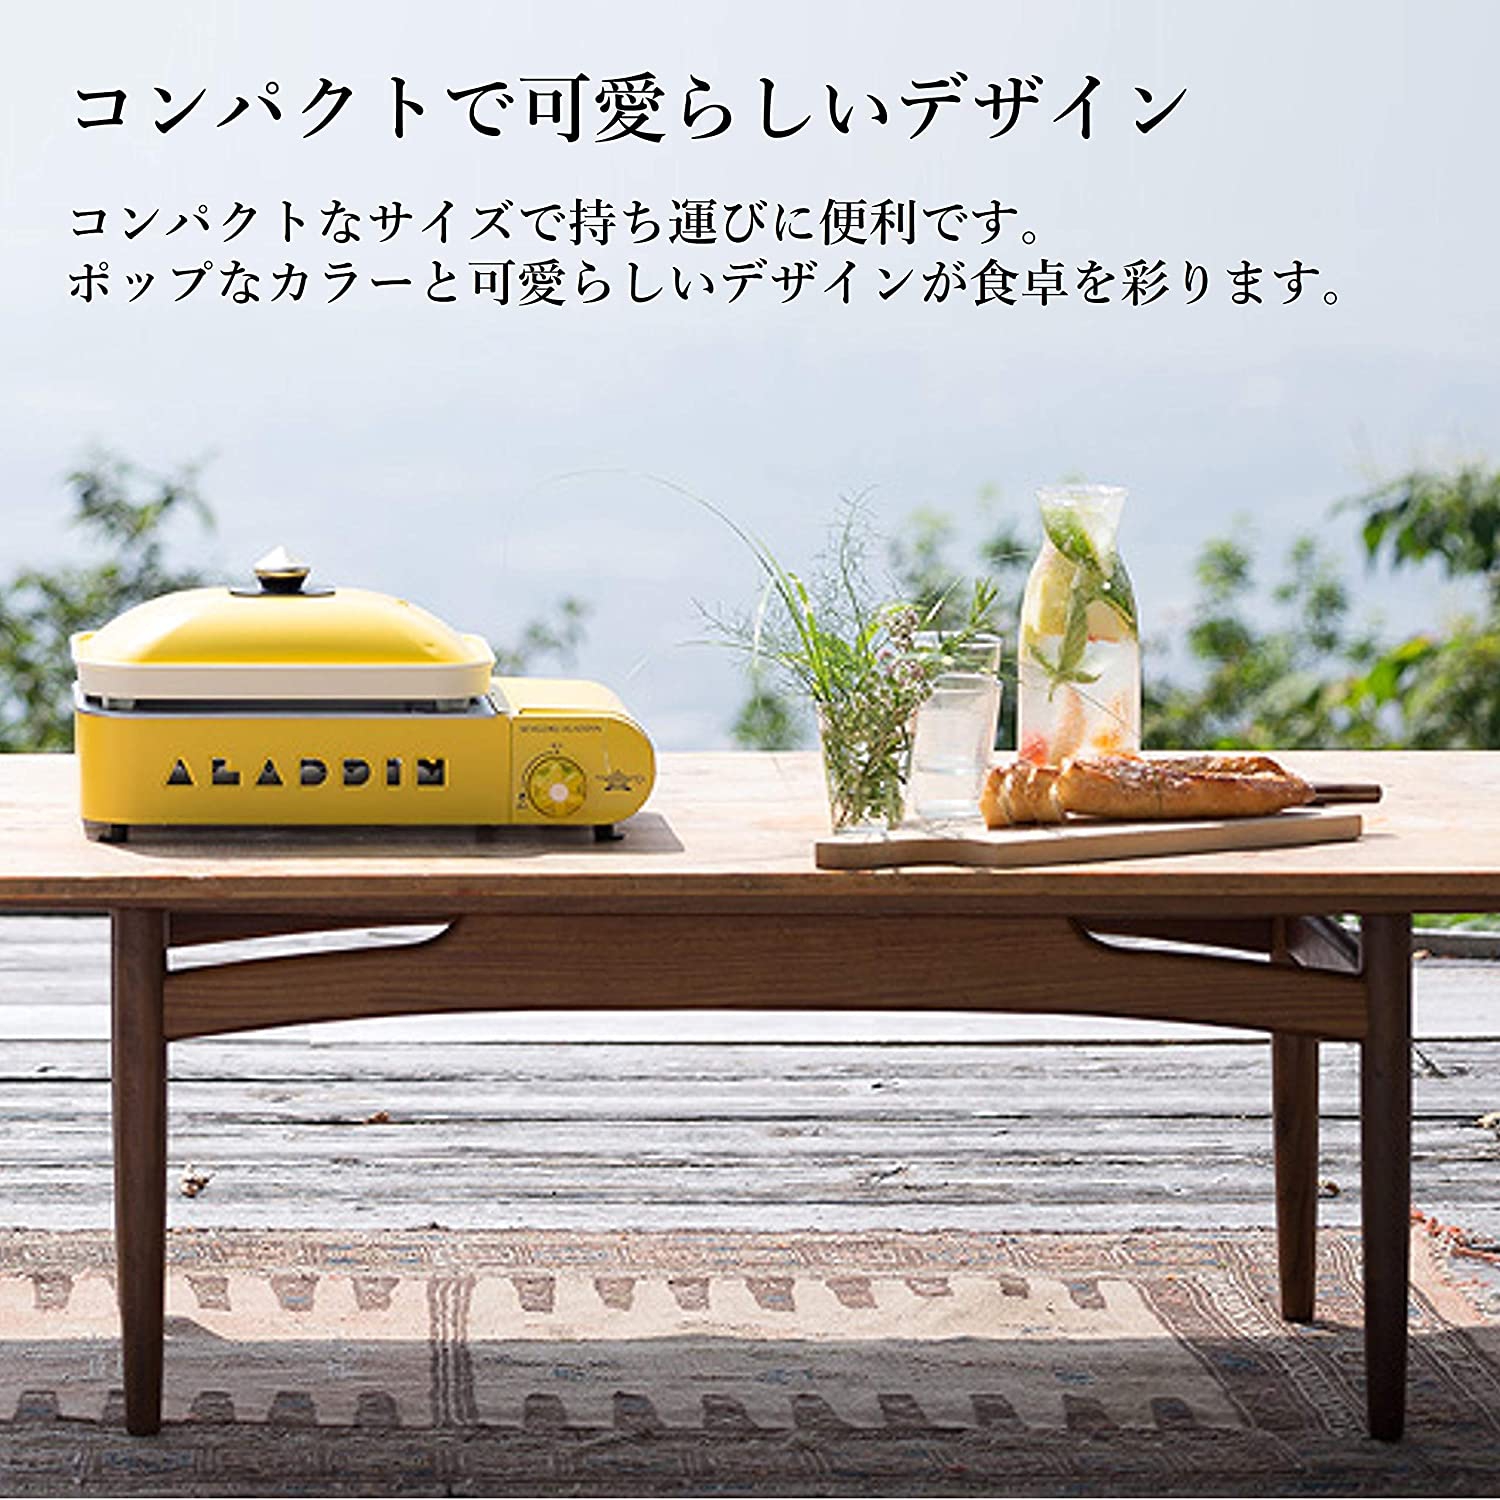 Sengoku Aladdin(センゴクアラジン) ポータブル ガス ホットプレート プチパン SAG-RS21Bの商品画像サムネ3 